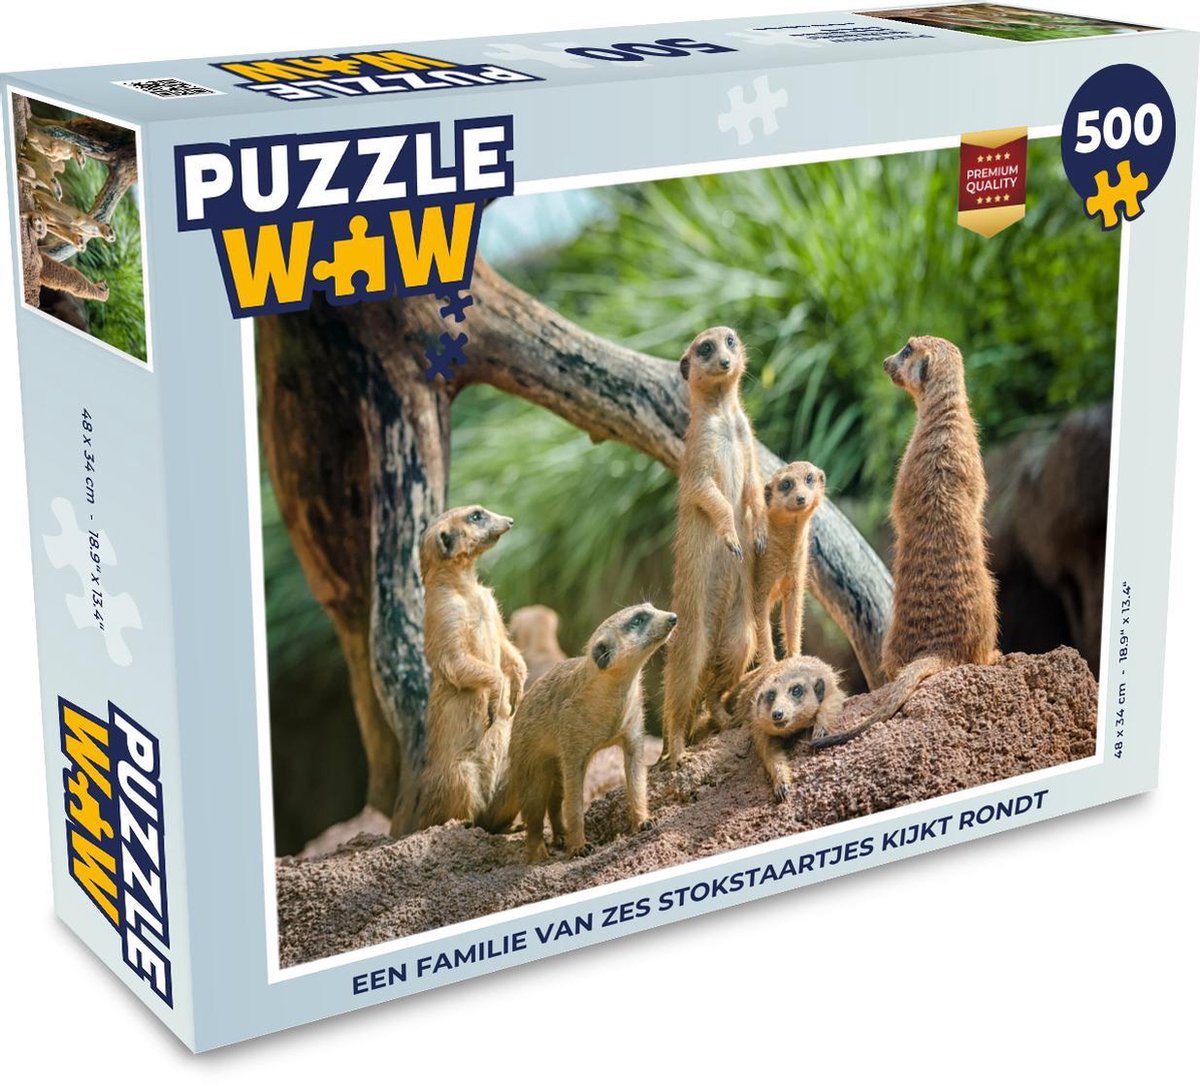 Puzzel 500 stukjes Stokstaartje - Een familie van zes Stokstaartjes kijkt  rondt -... | bol.com